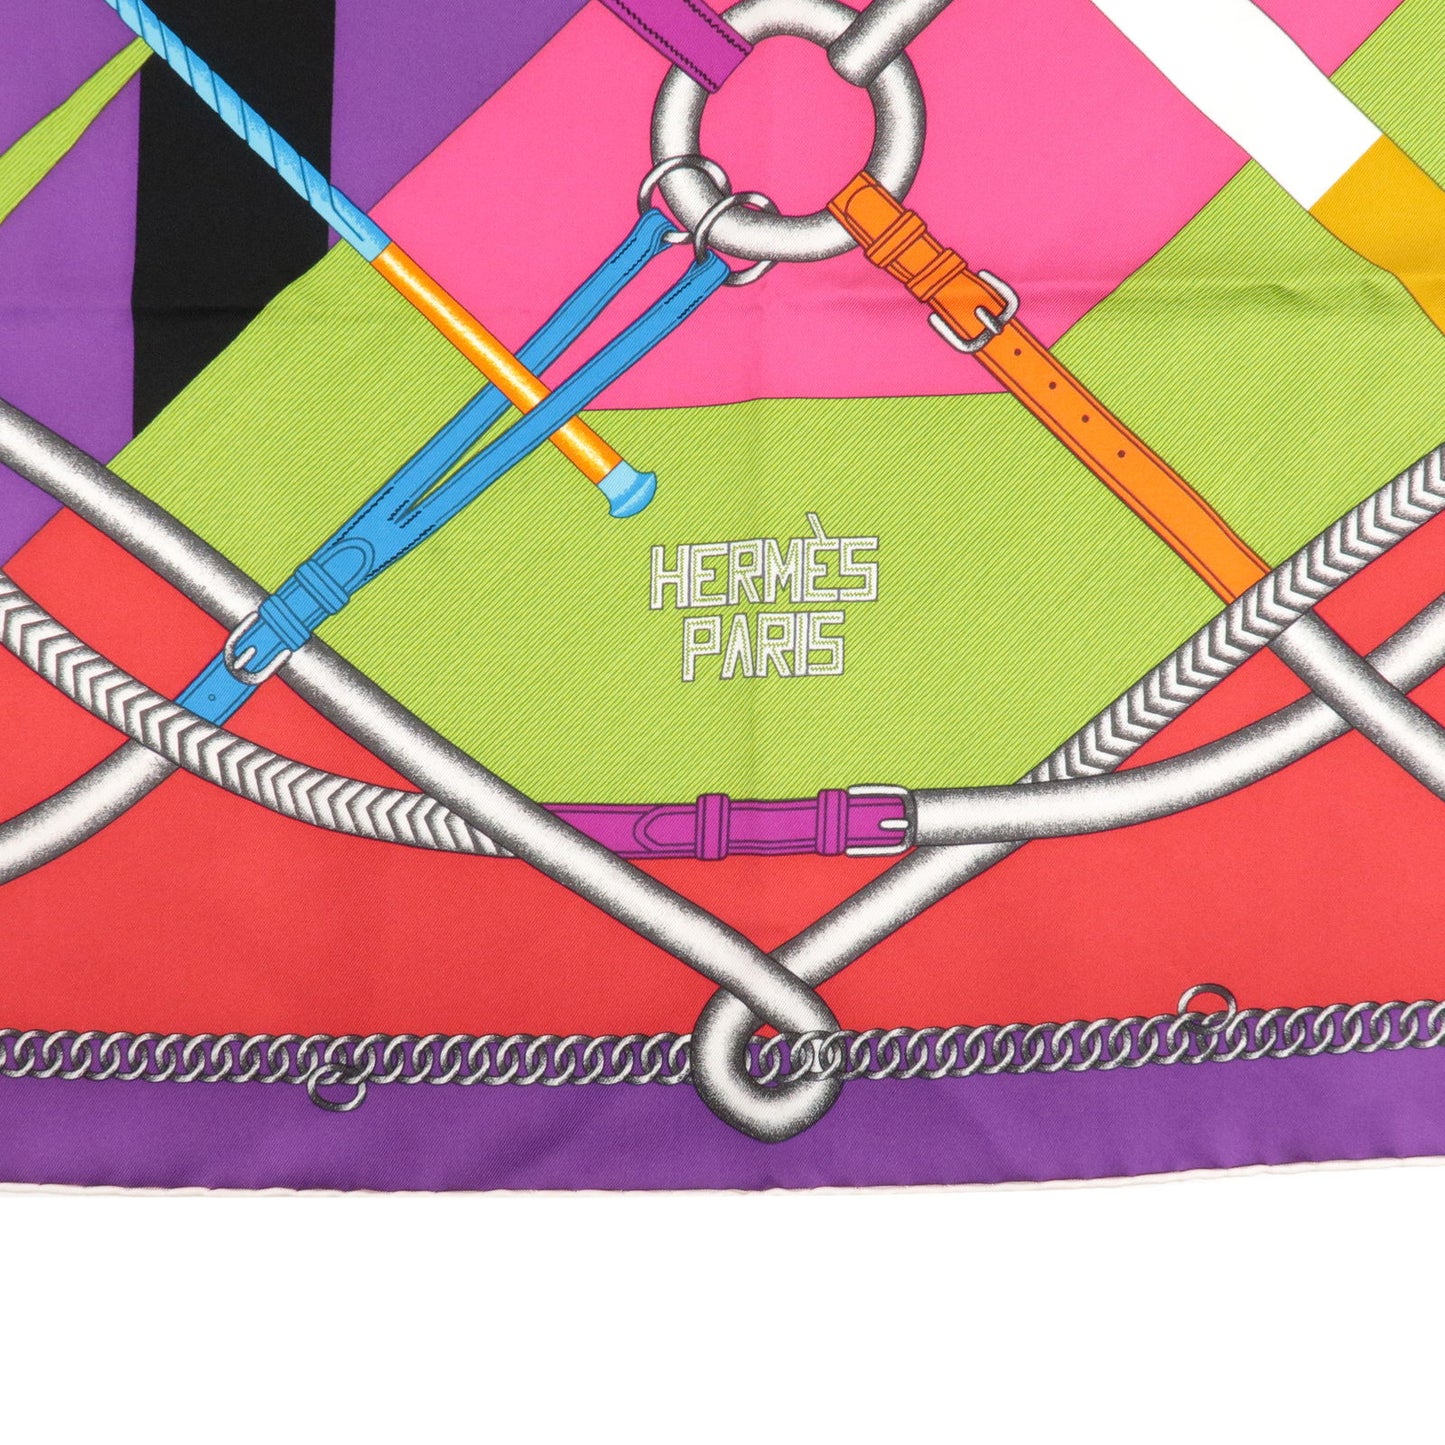 HERMES Carre 90 PAR COURS FAUTE Silk 100% Scarf Belt Print